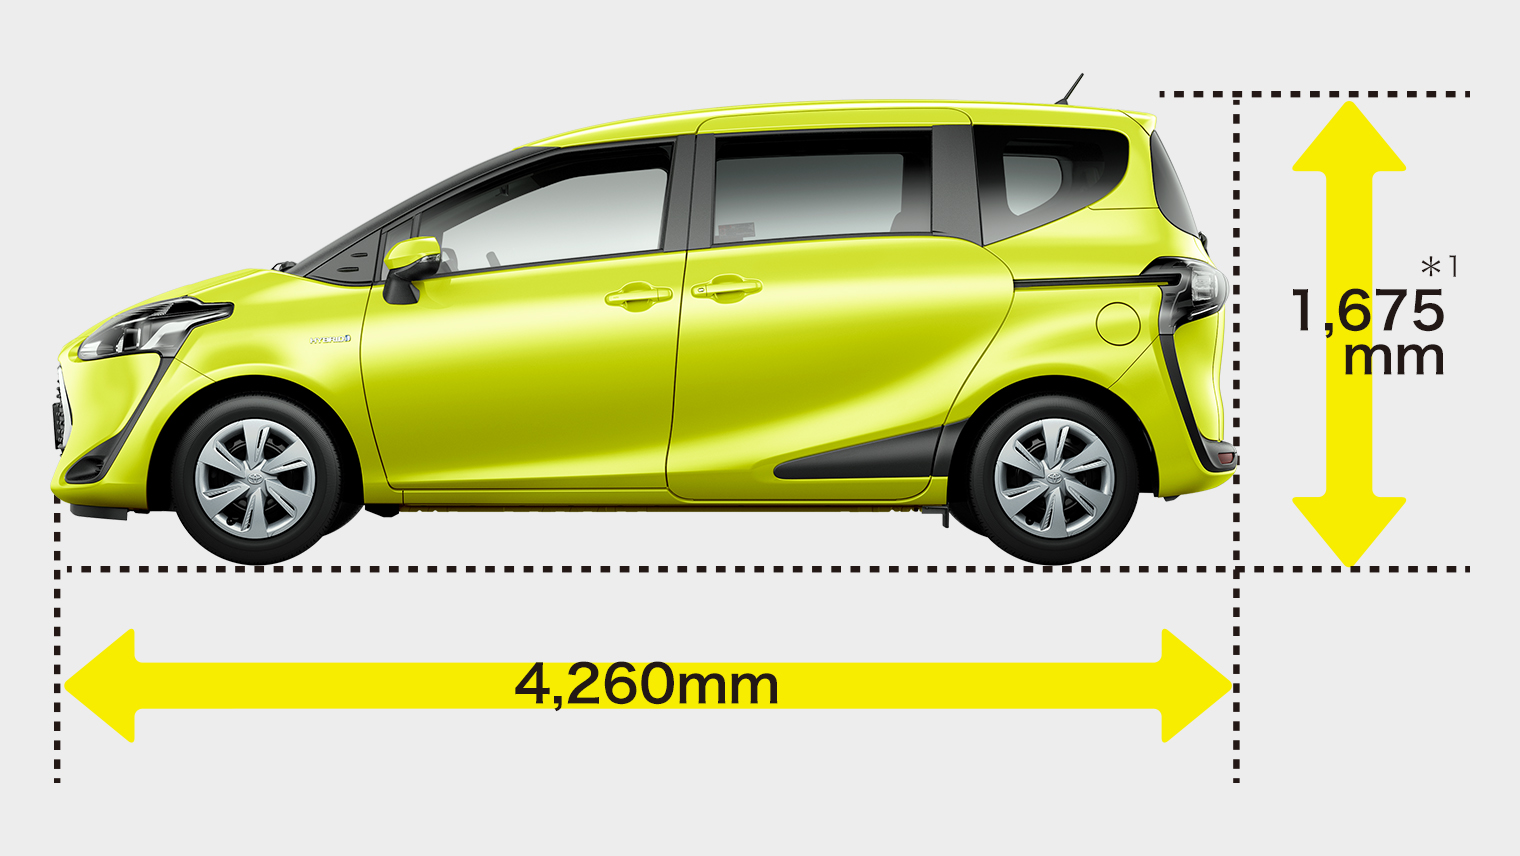 シエンタ 車体外寸 室内サイズ寸法はどのぐらい 機械式駐車場は停めれる ミニバン生活